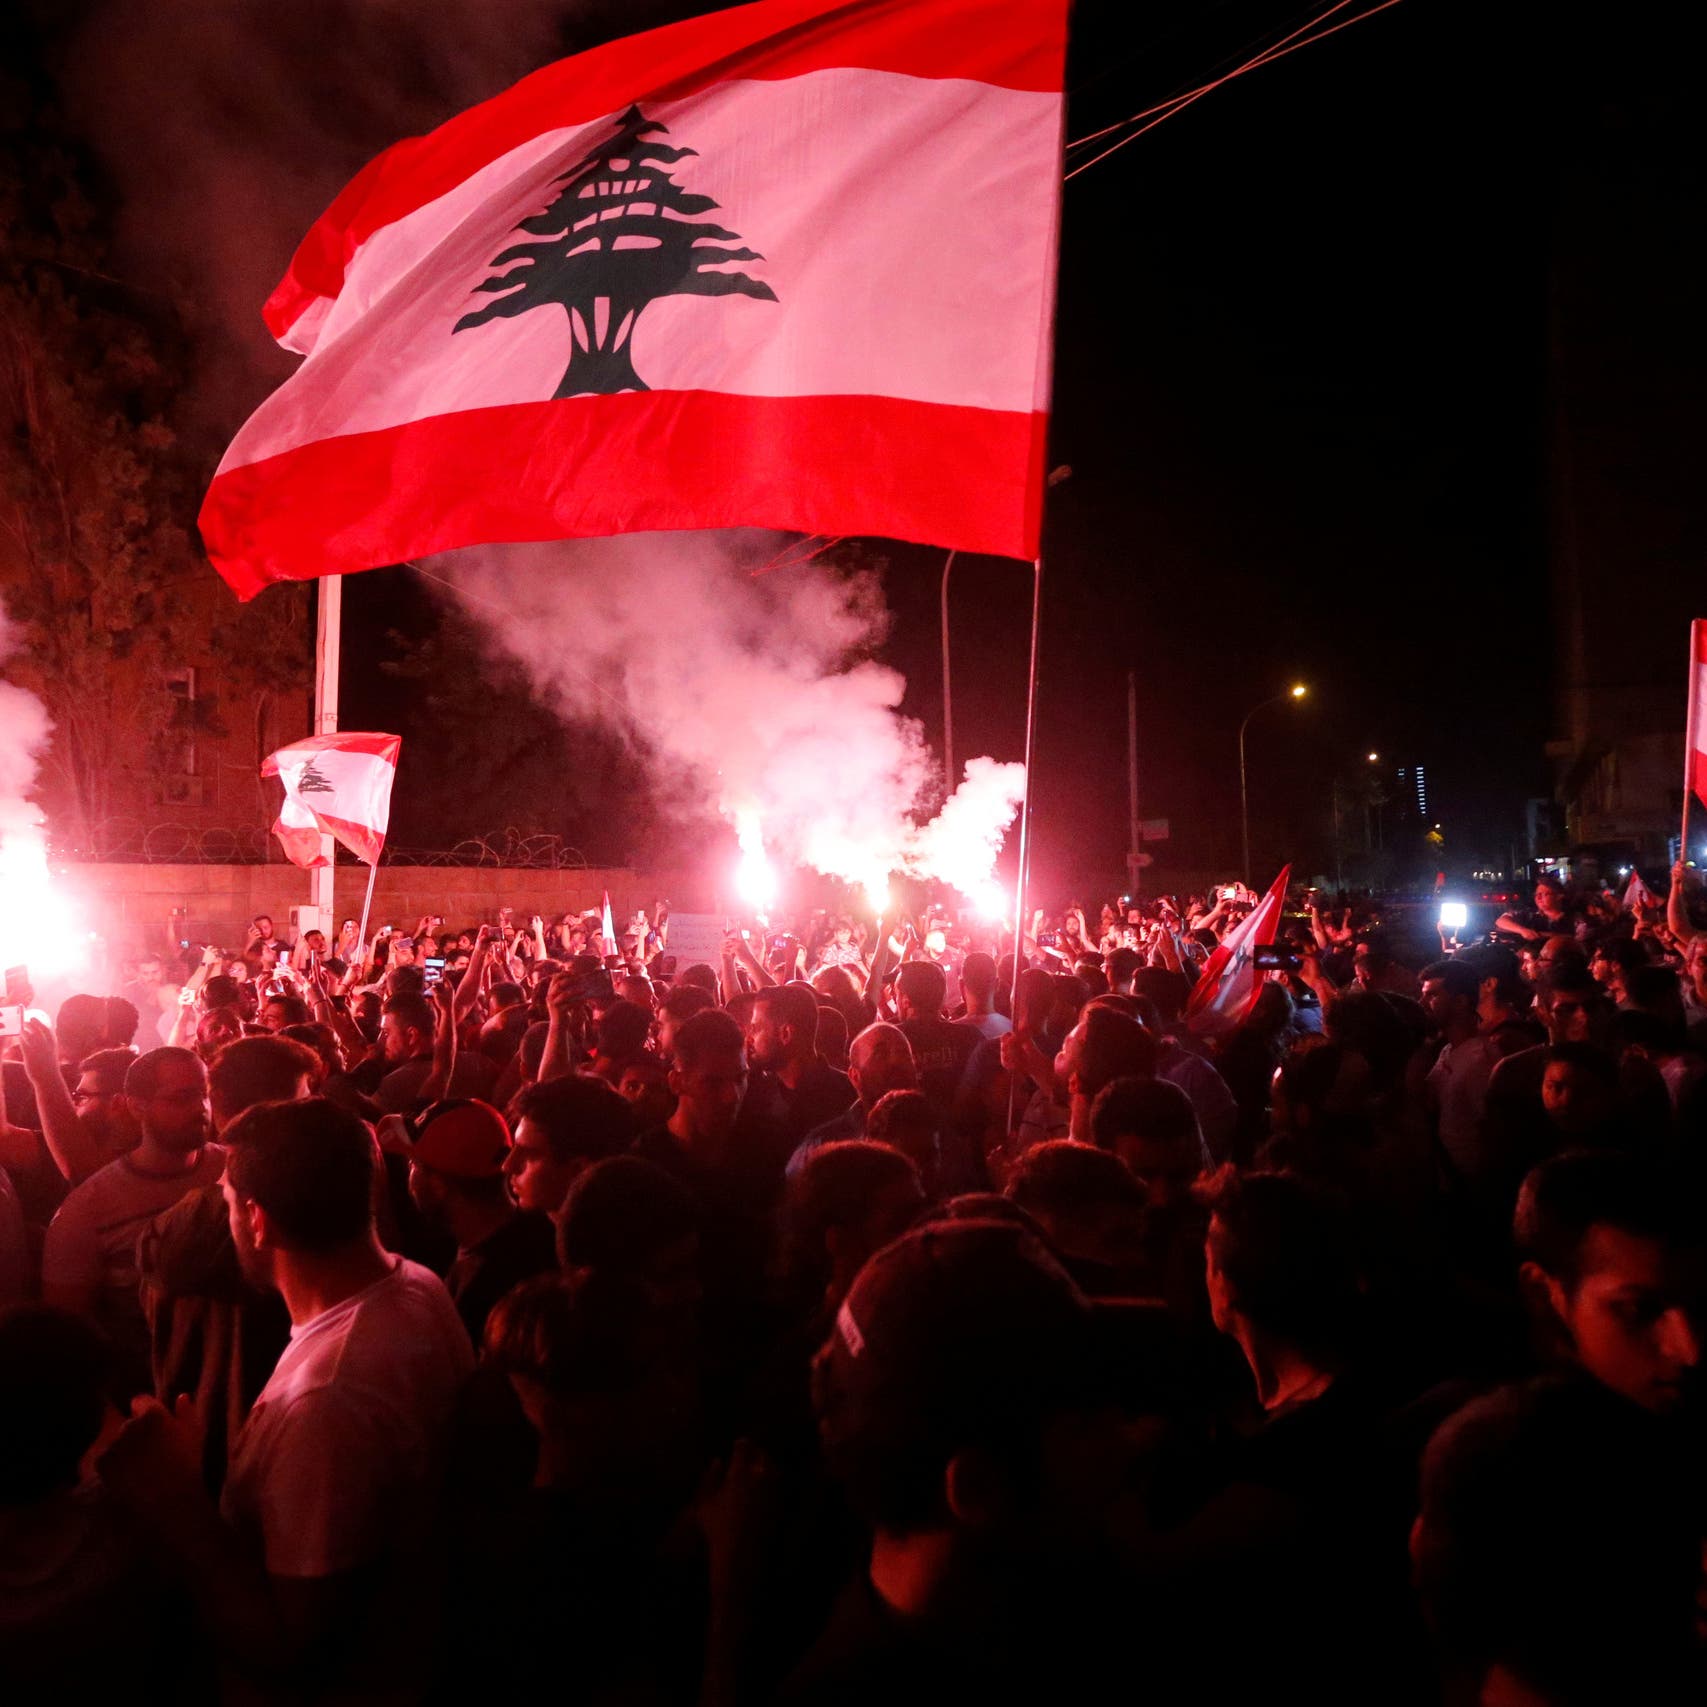 حكومة لبنان "مكانك راوح"... حزب الله يتعنت والحريري تحت الضغط